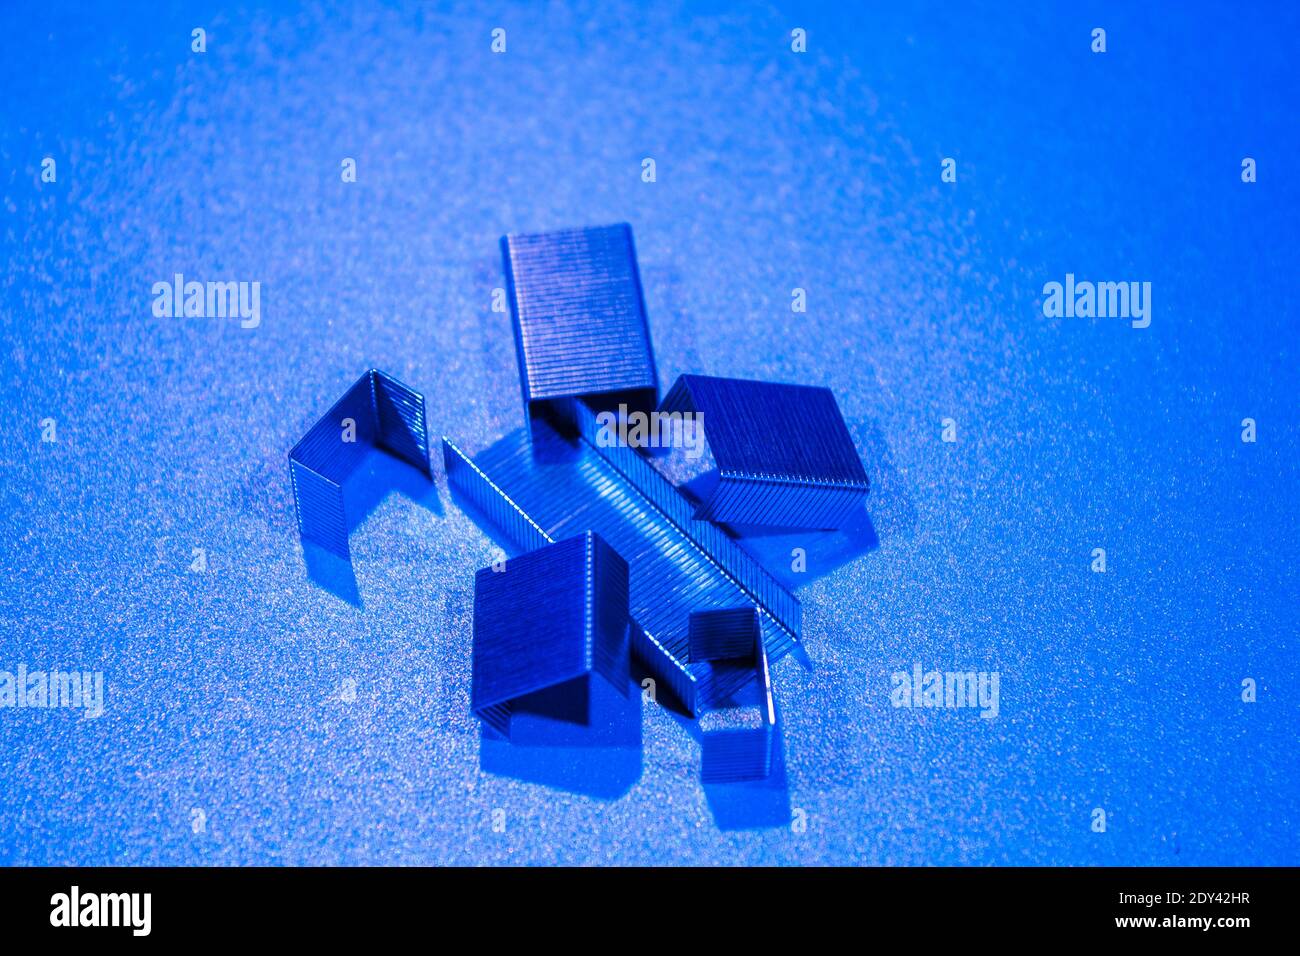 Staples Auf Dem Schreibtisch In Pantone Blue Stockfotografie - Alamy